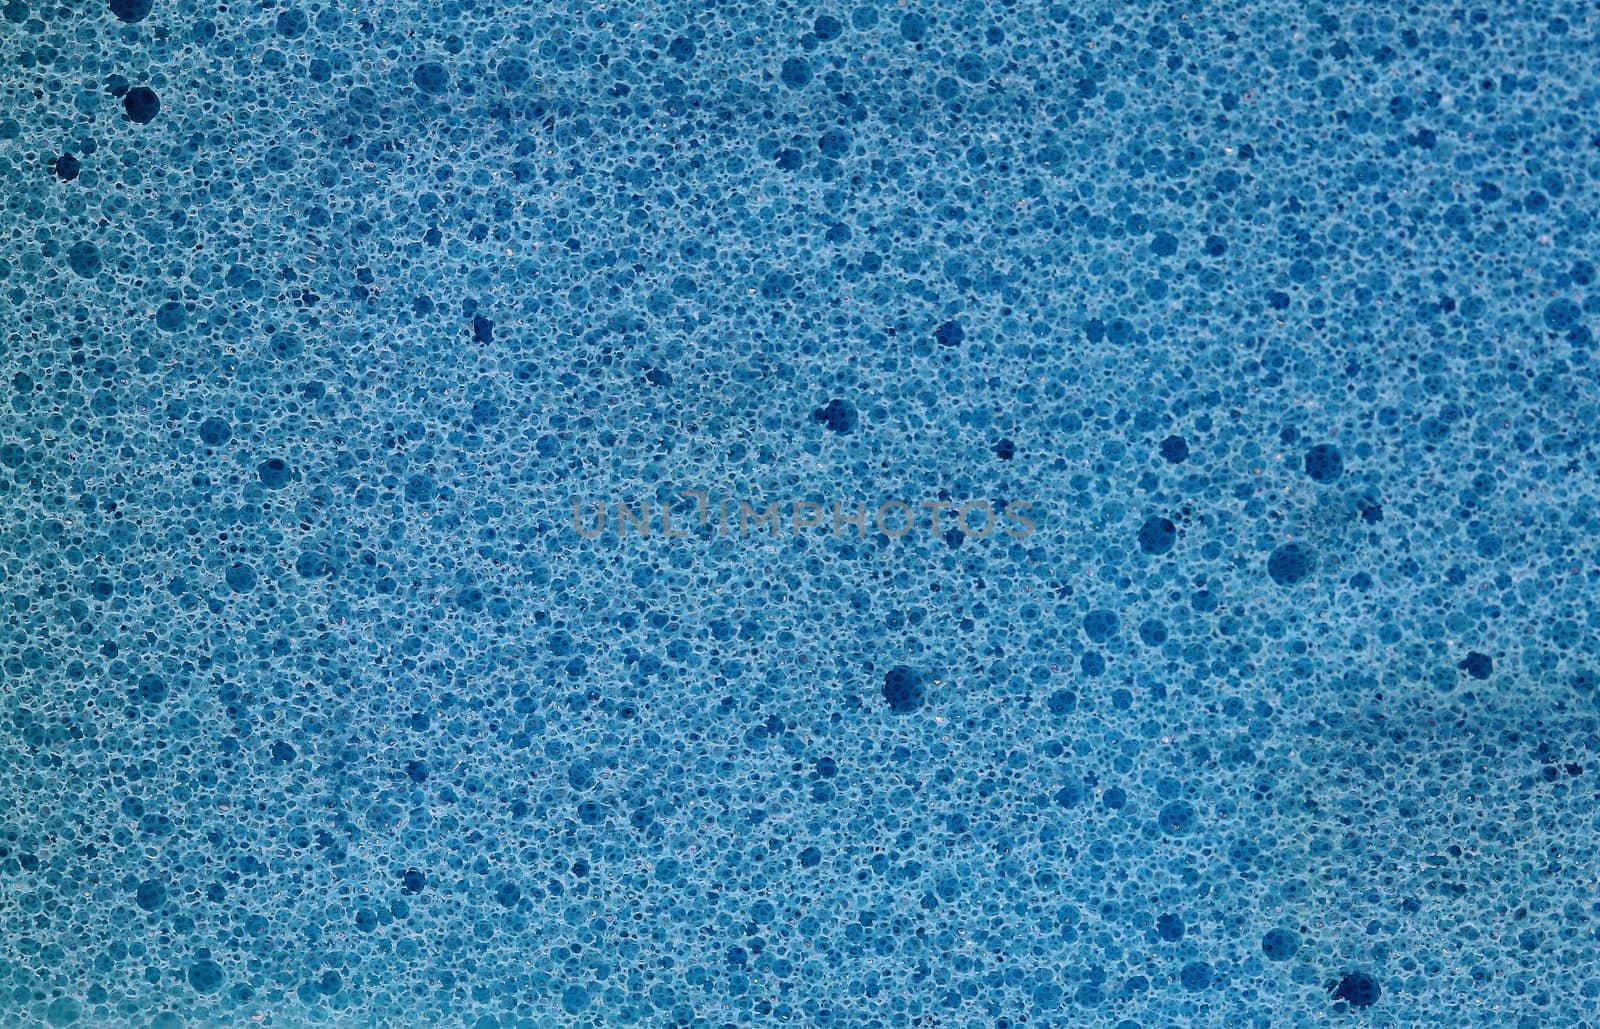 Closeup blue sponge texture background